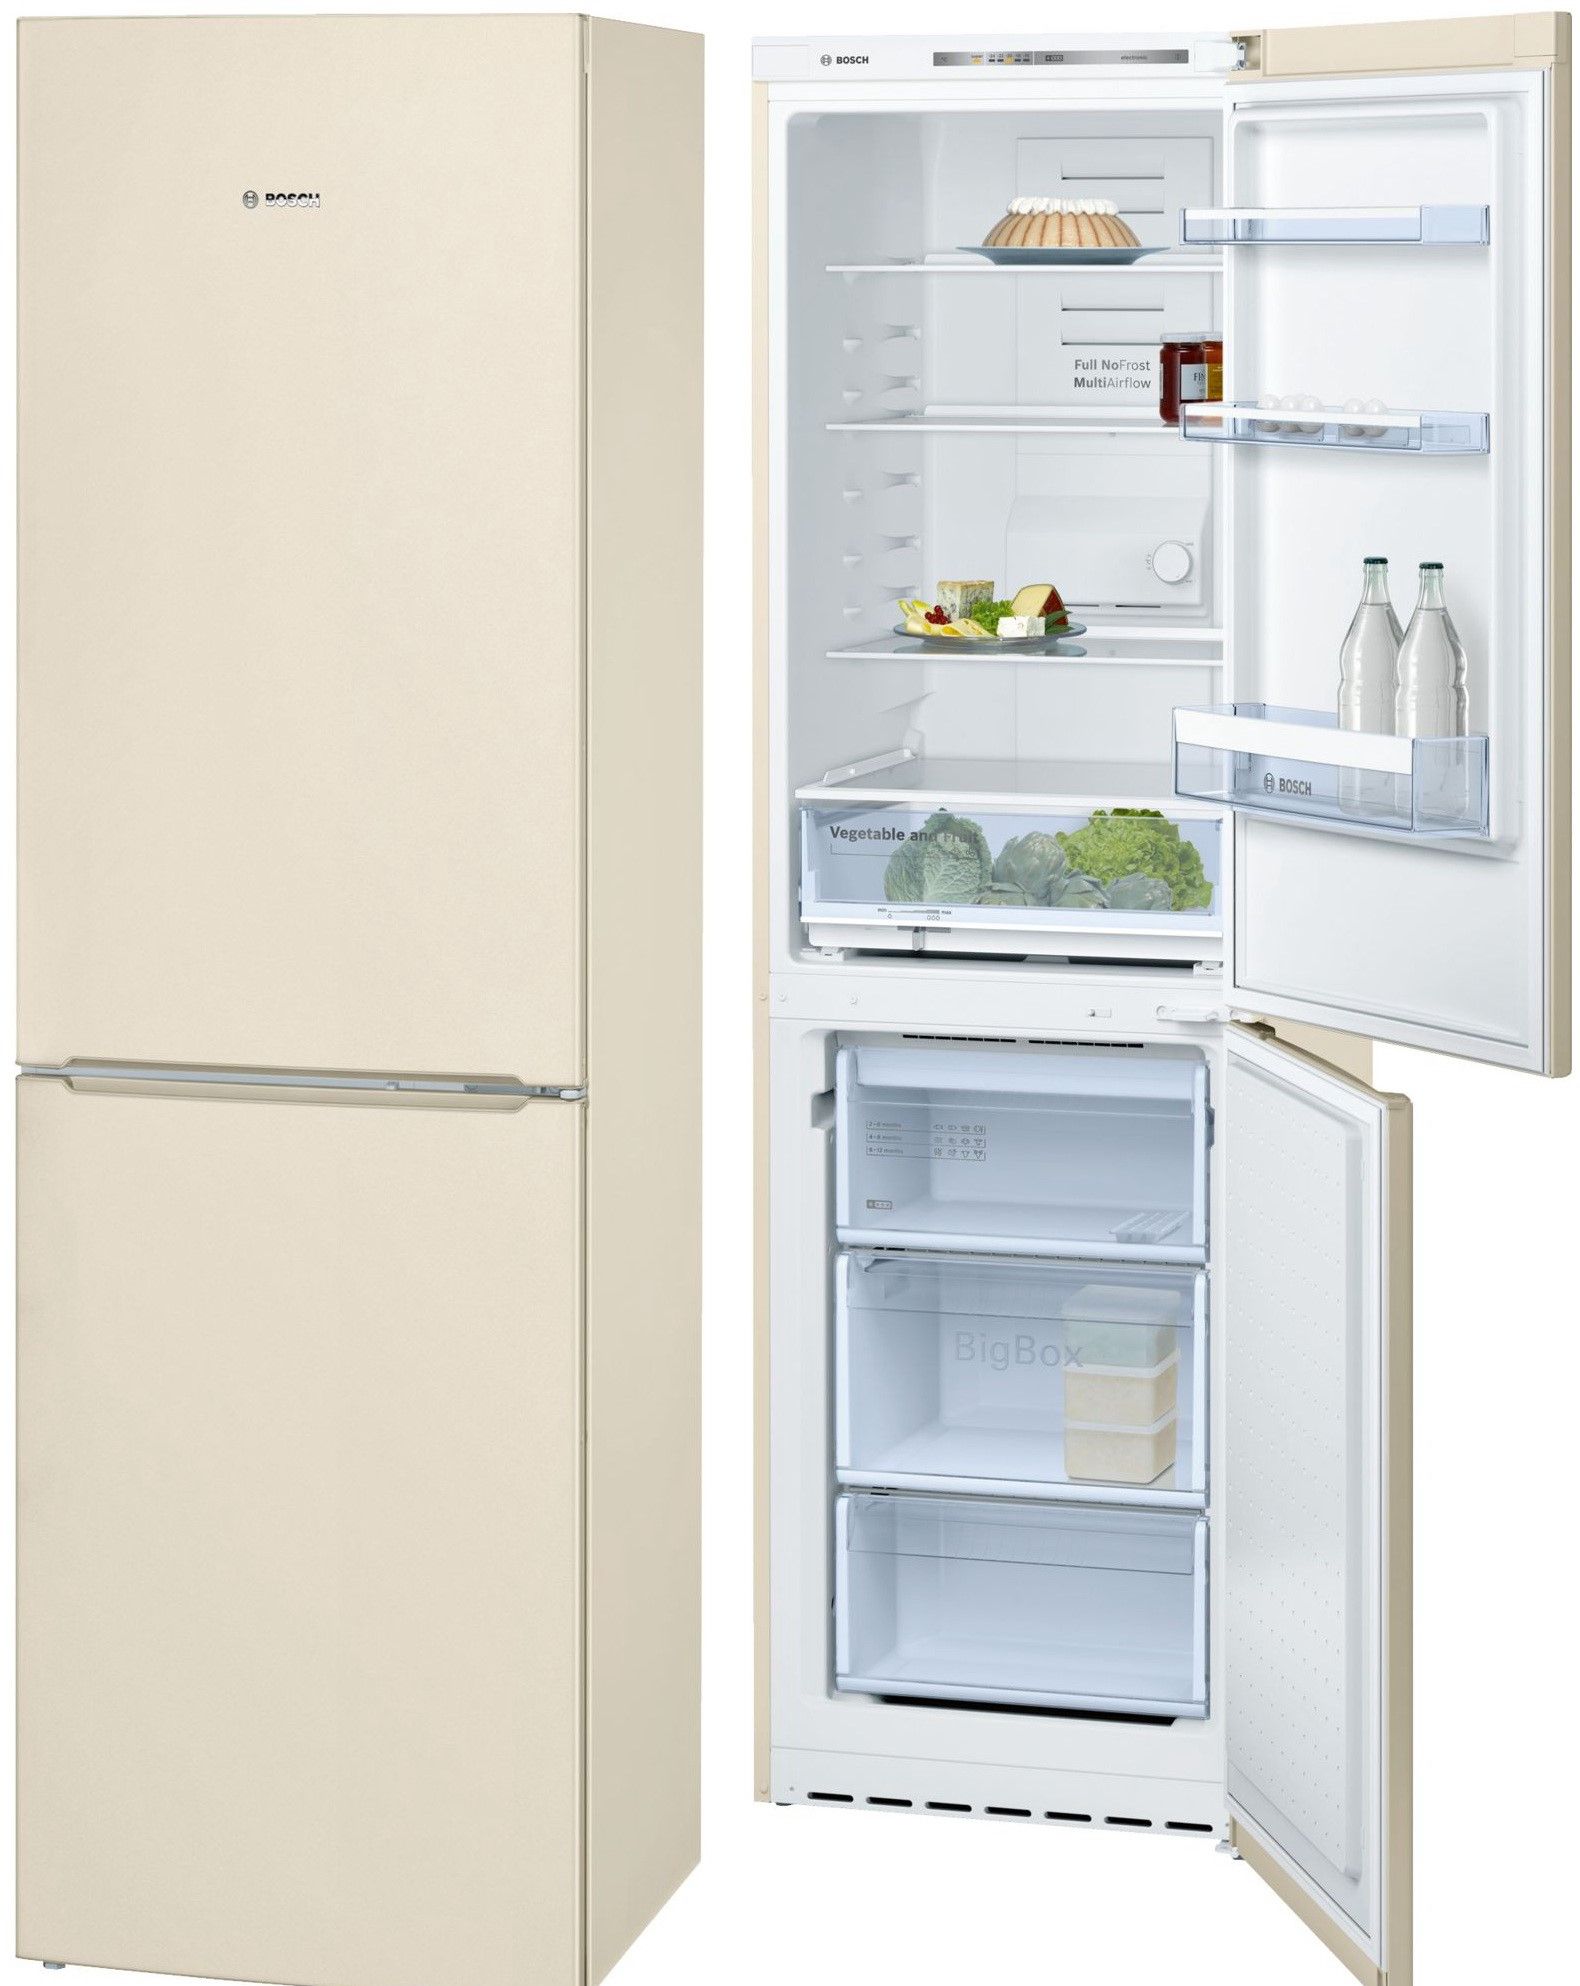 холодильник bosch kgn39nk13r, купить в Красноярске холодильник bosch kgn39nk13r,  купить в Красноярске дешево холодильник bosch kgn39nk13r, купить в Красноярске минимальной цене холодильник bosch kgn39nk13r